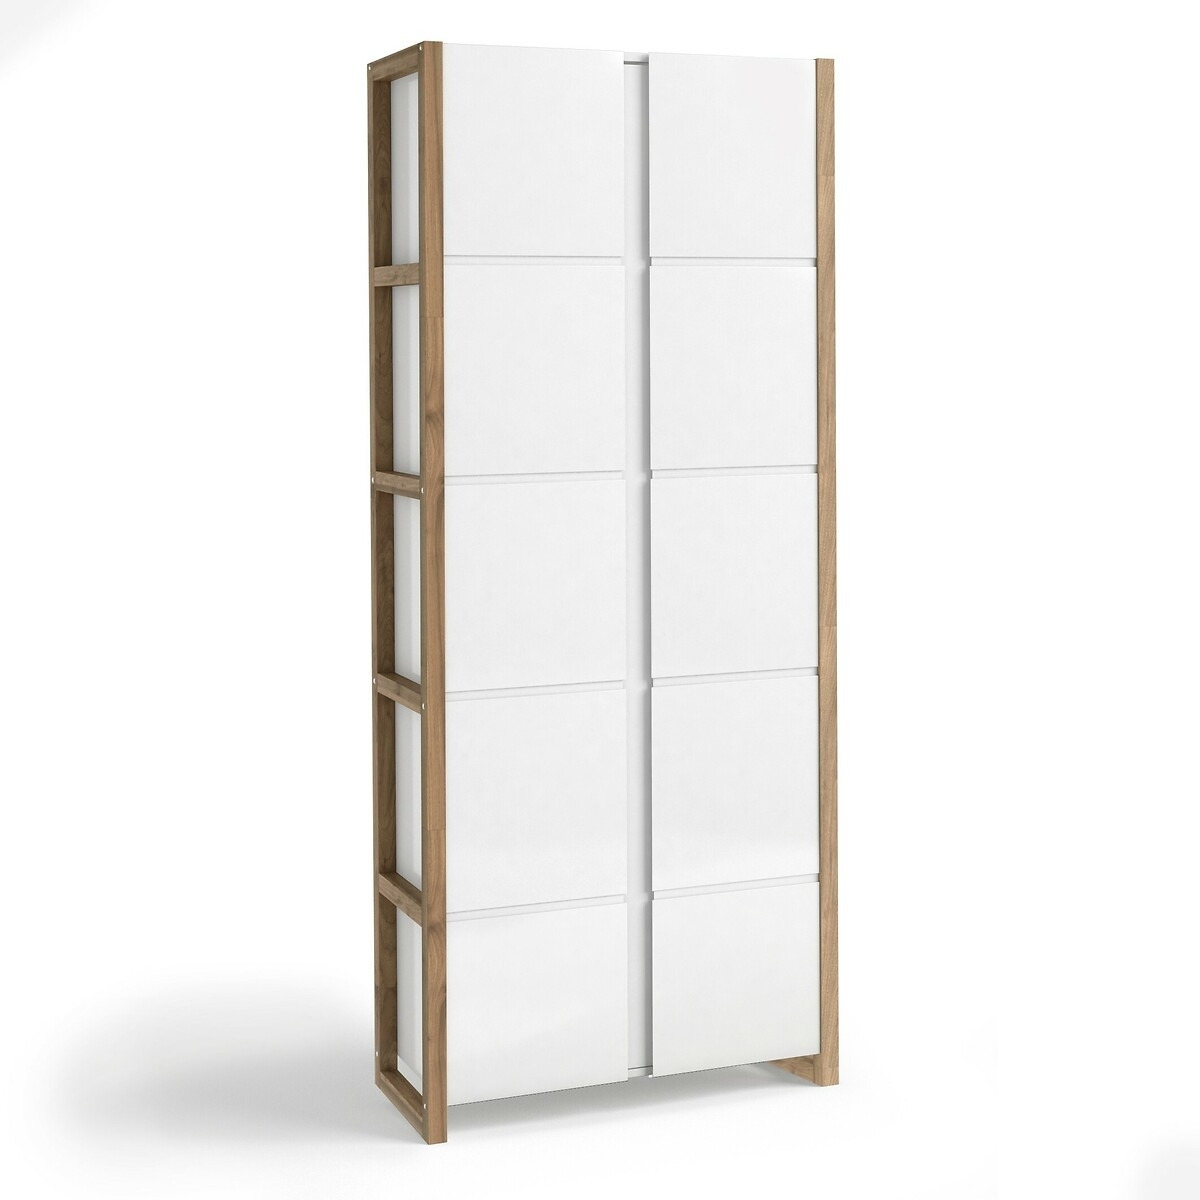 Compo Bookcase Storage Cabinet - image 1